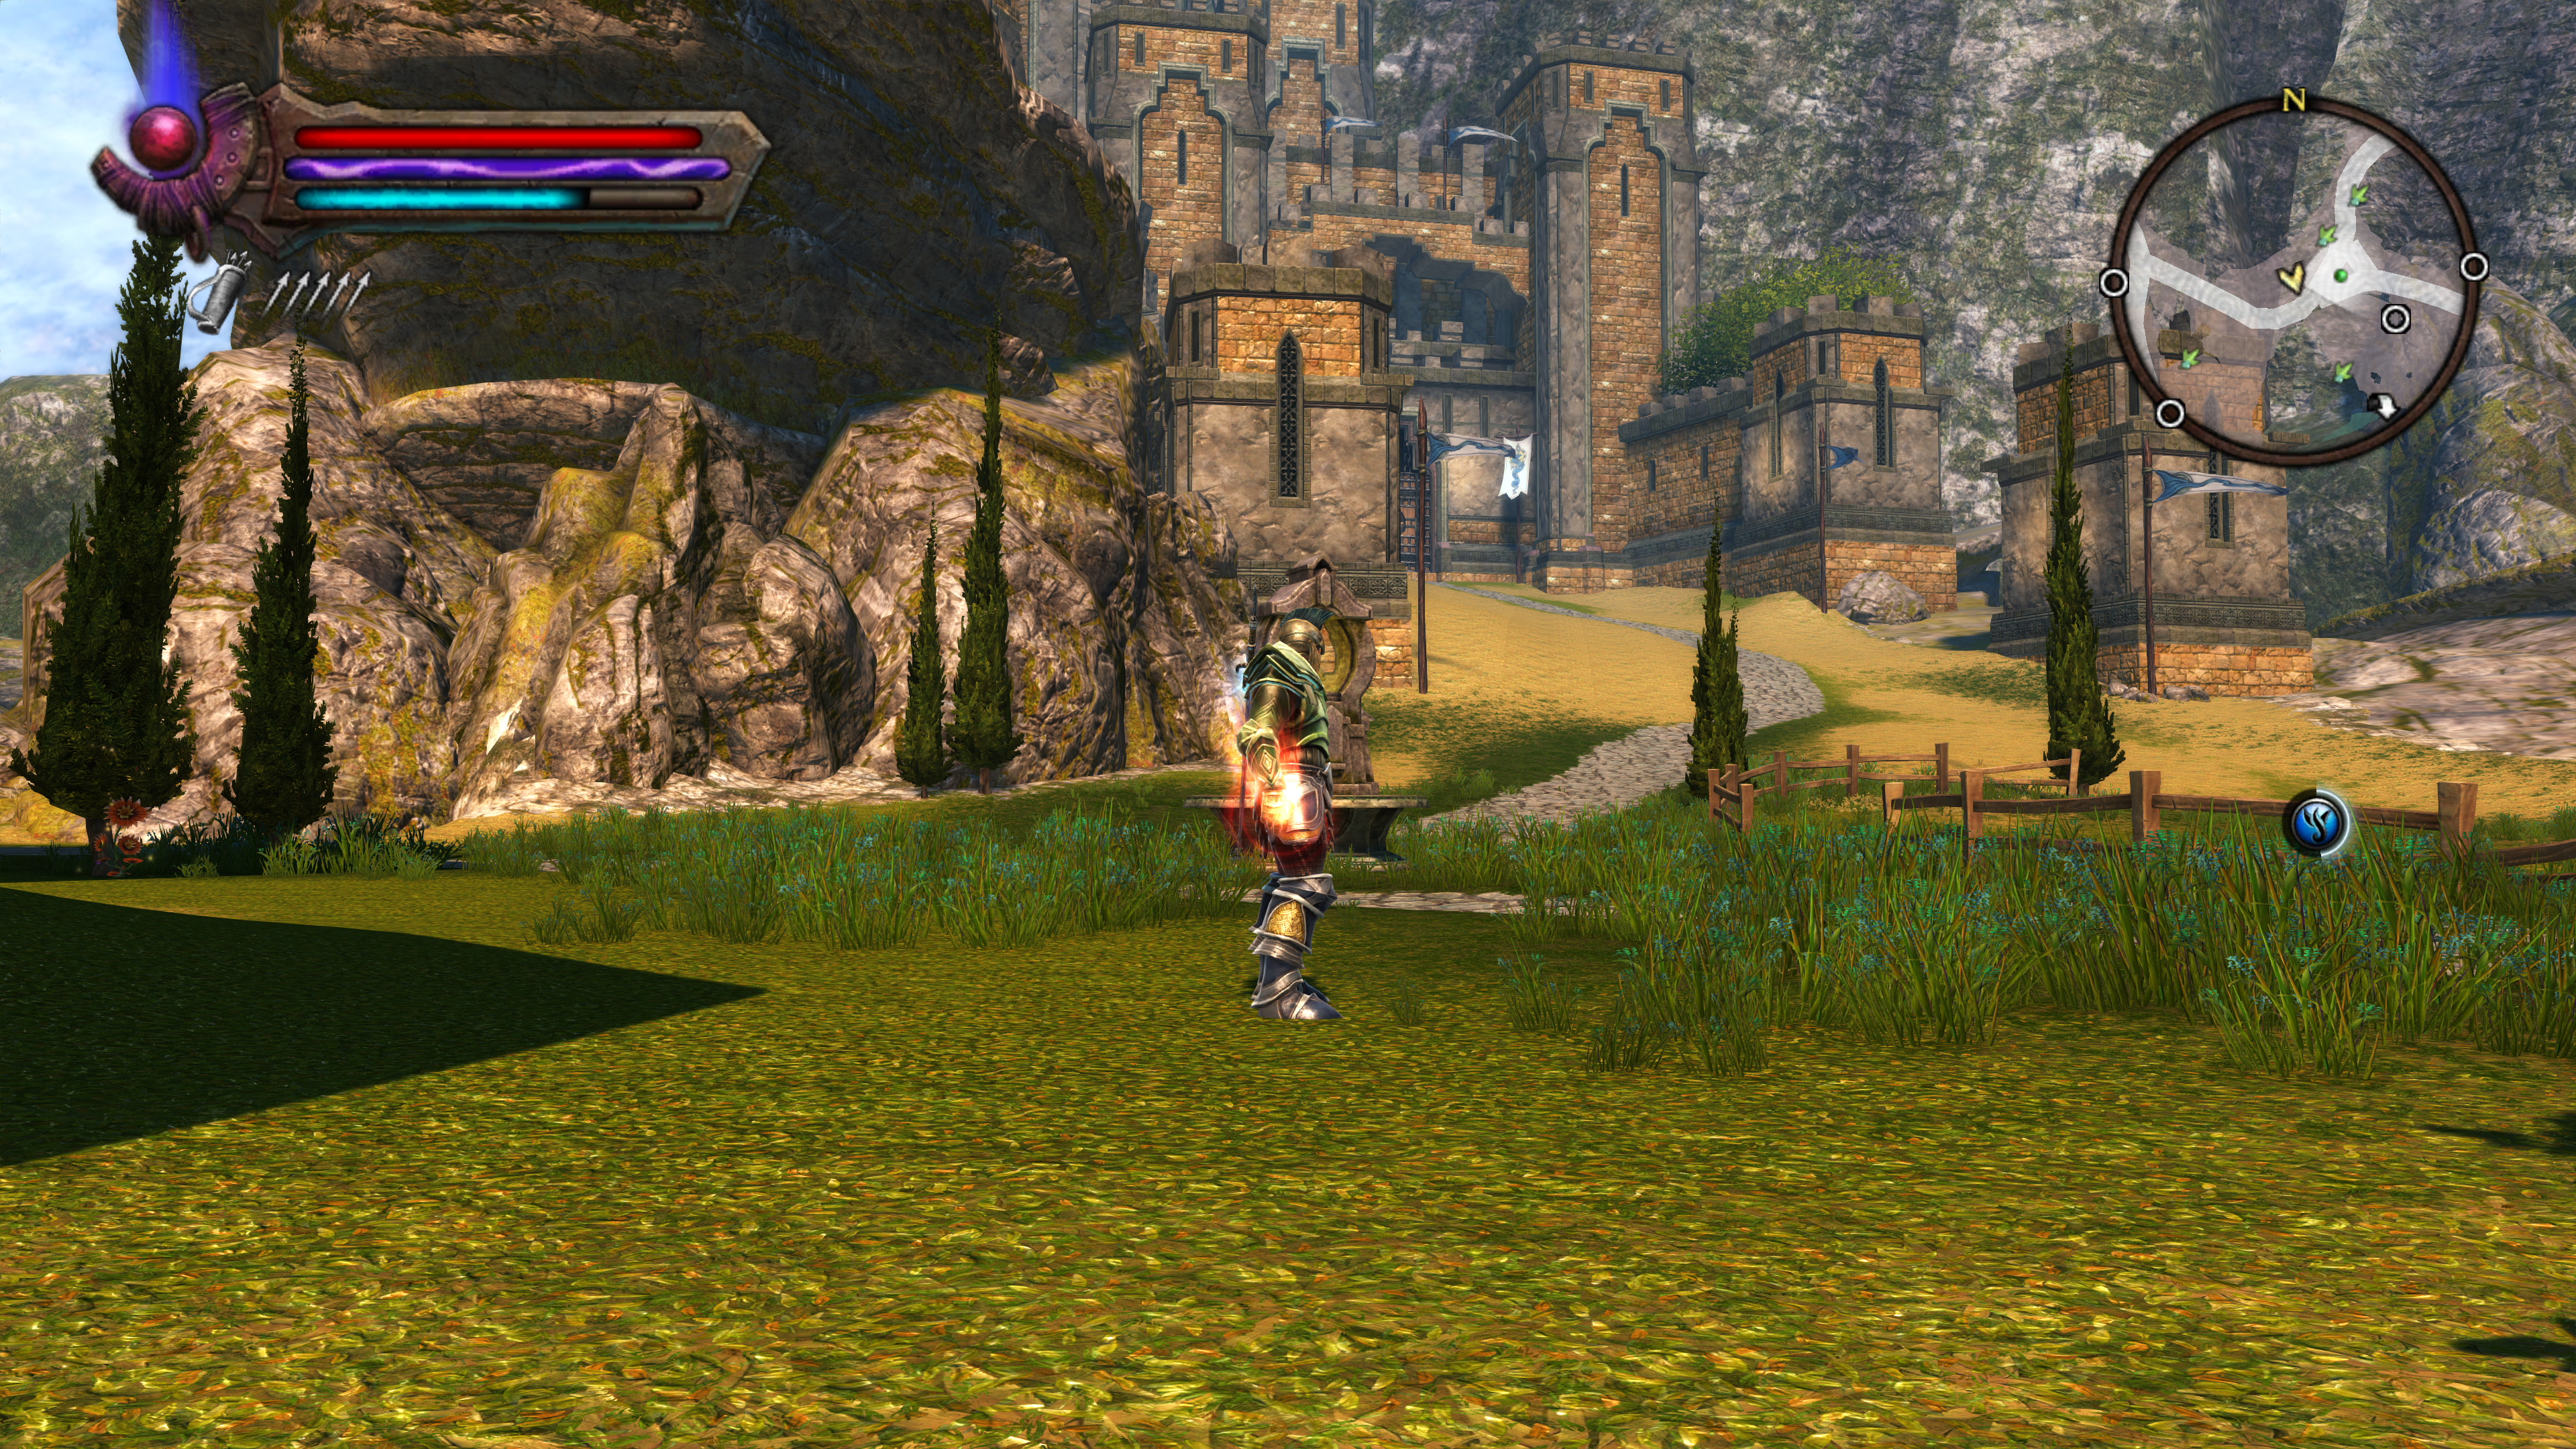 Atualizado] Kingdoms of Amalur: Re-Reckoning é remaster do RPG de